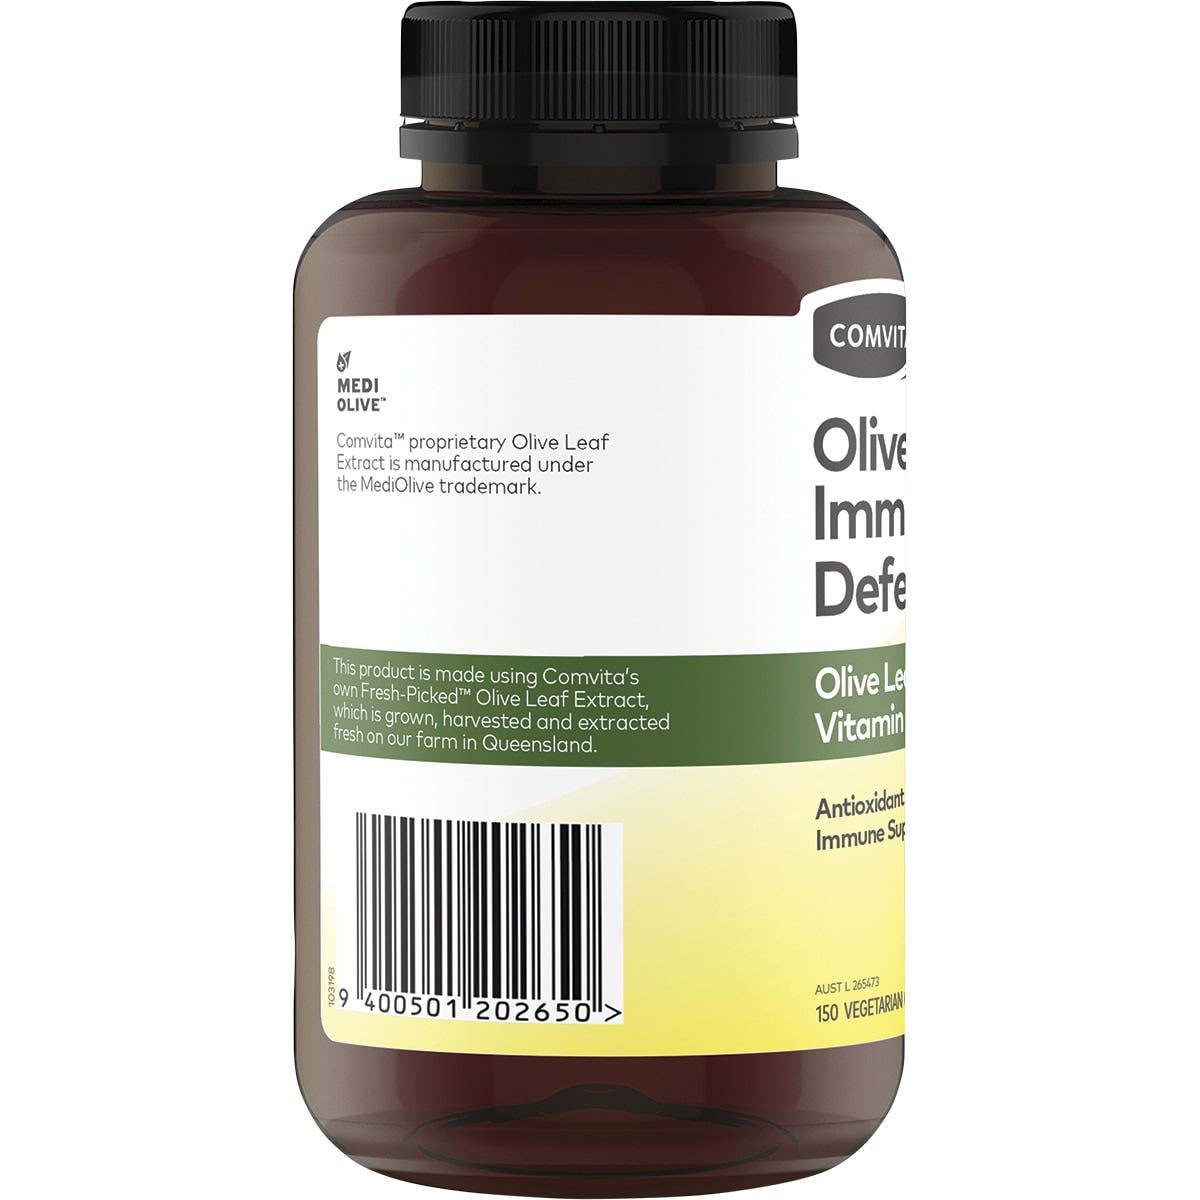 Comvita Olive Leaf Immune Defence Capsules